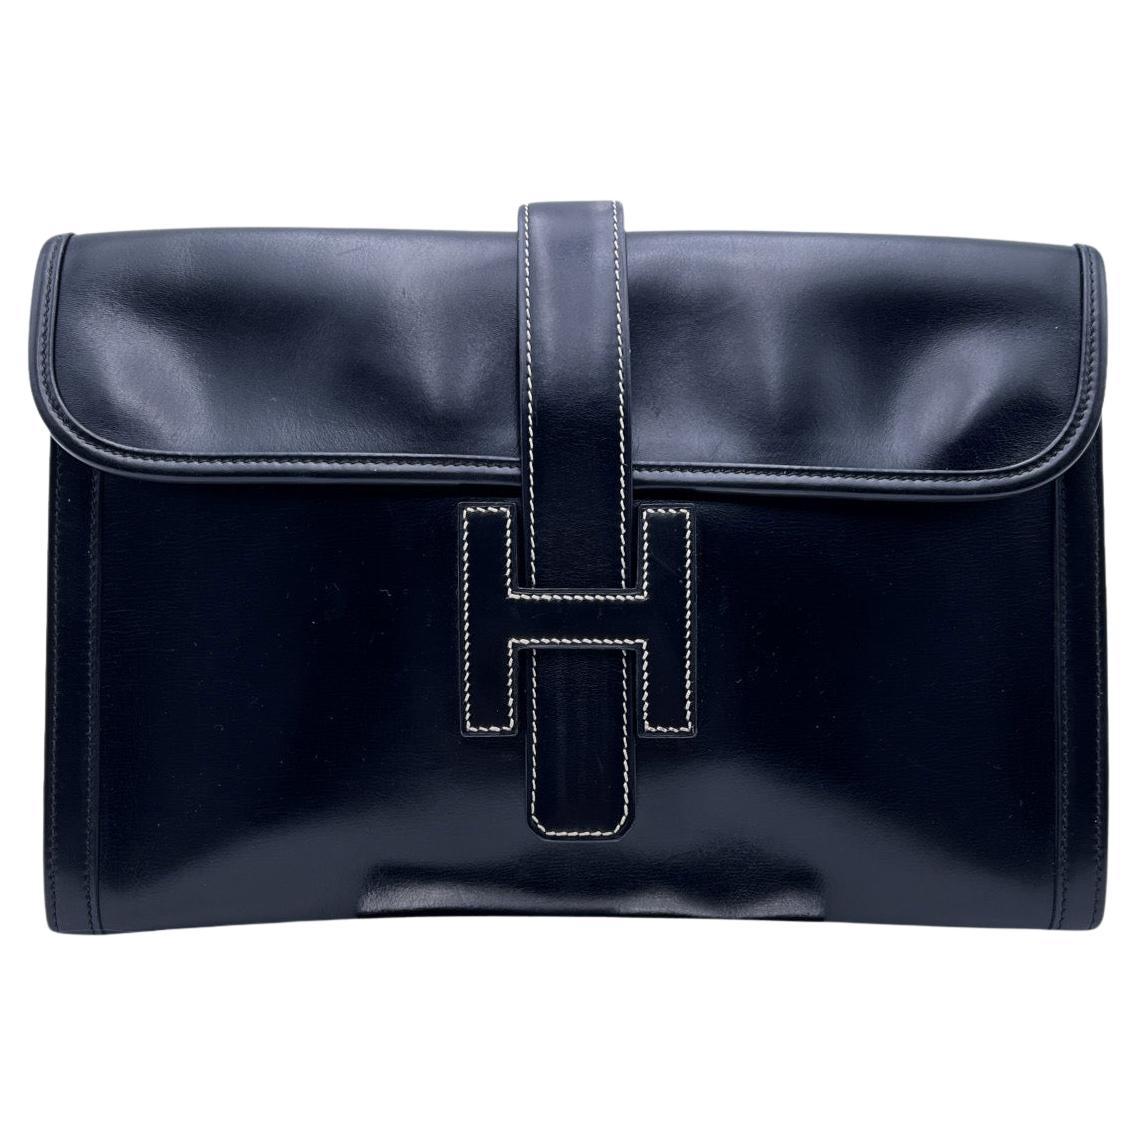 Hermes Vintage Black Leather Jige 29 cm Clutch Bag Pochette Handbag